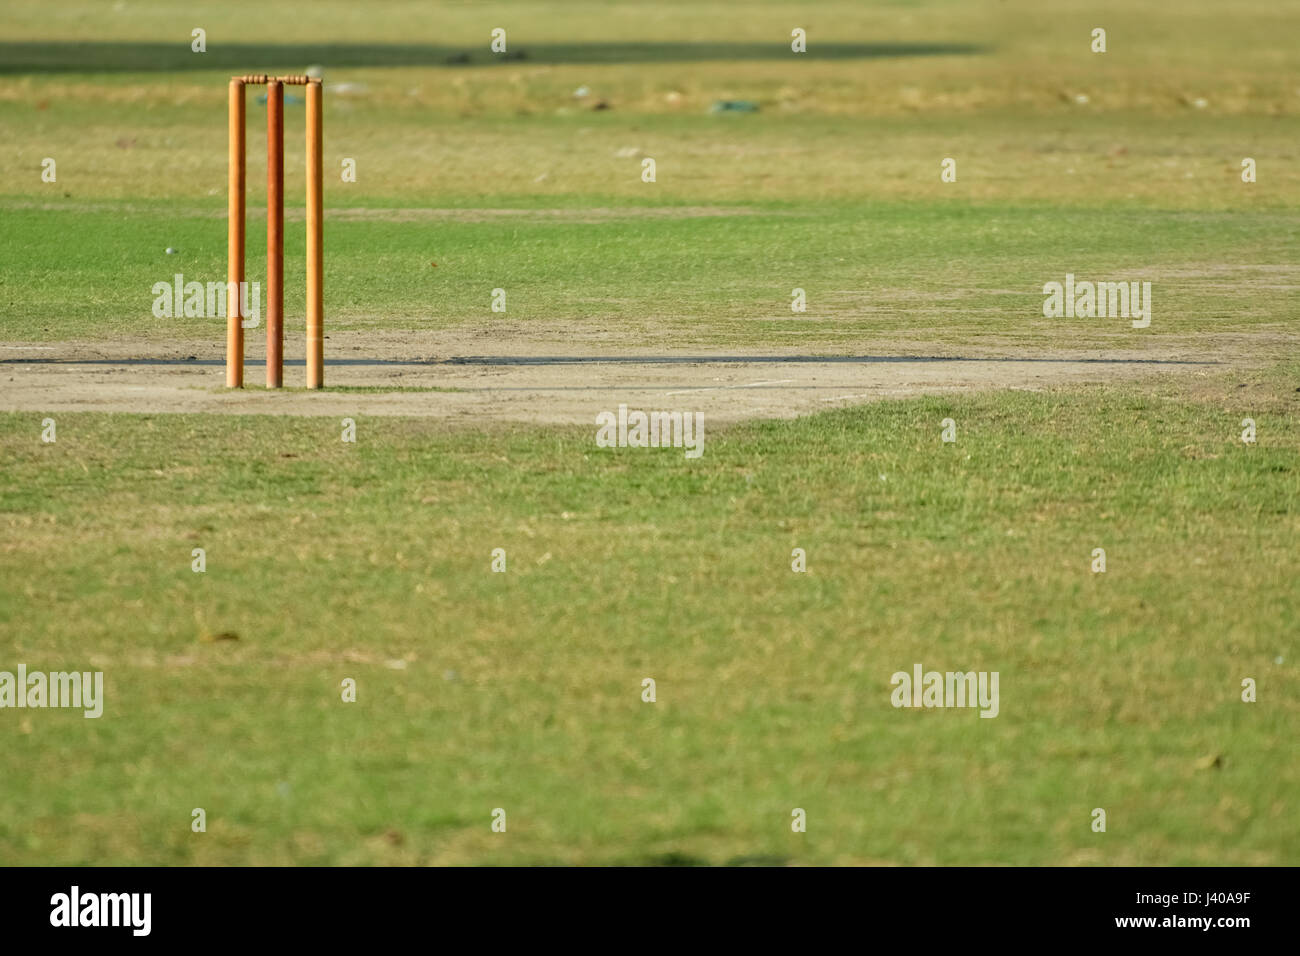 Svuotare il cricket pitch Foto Stock